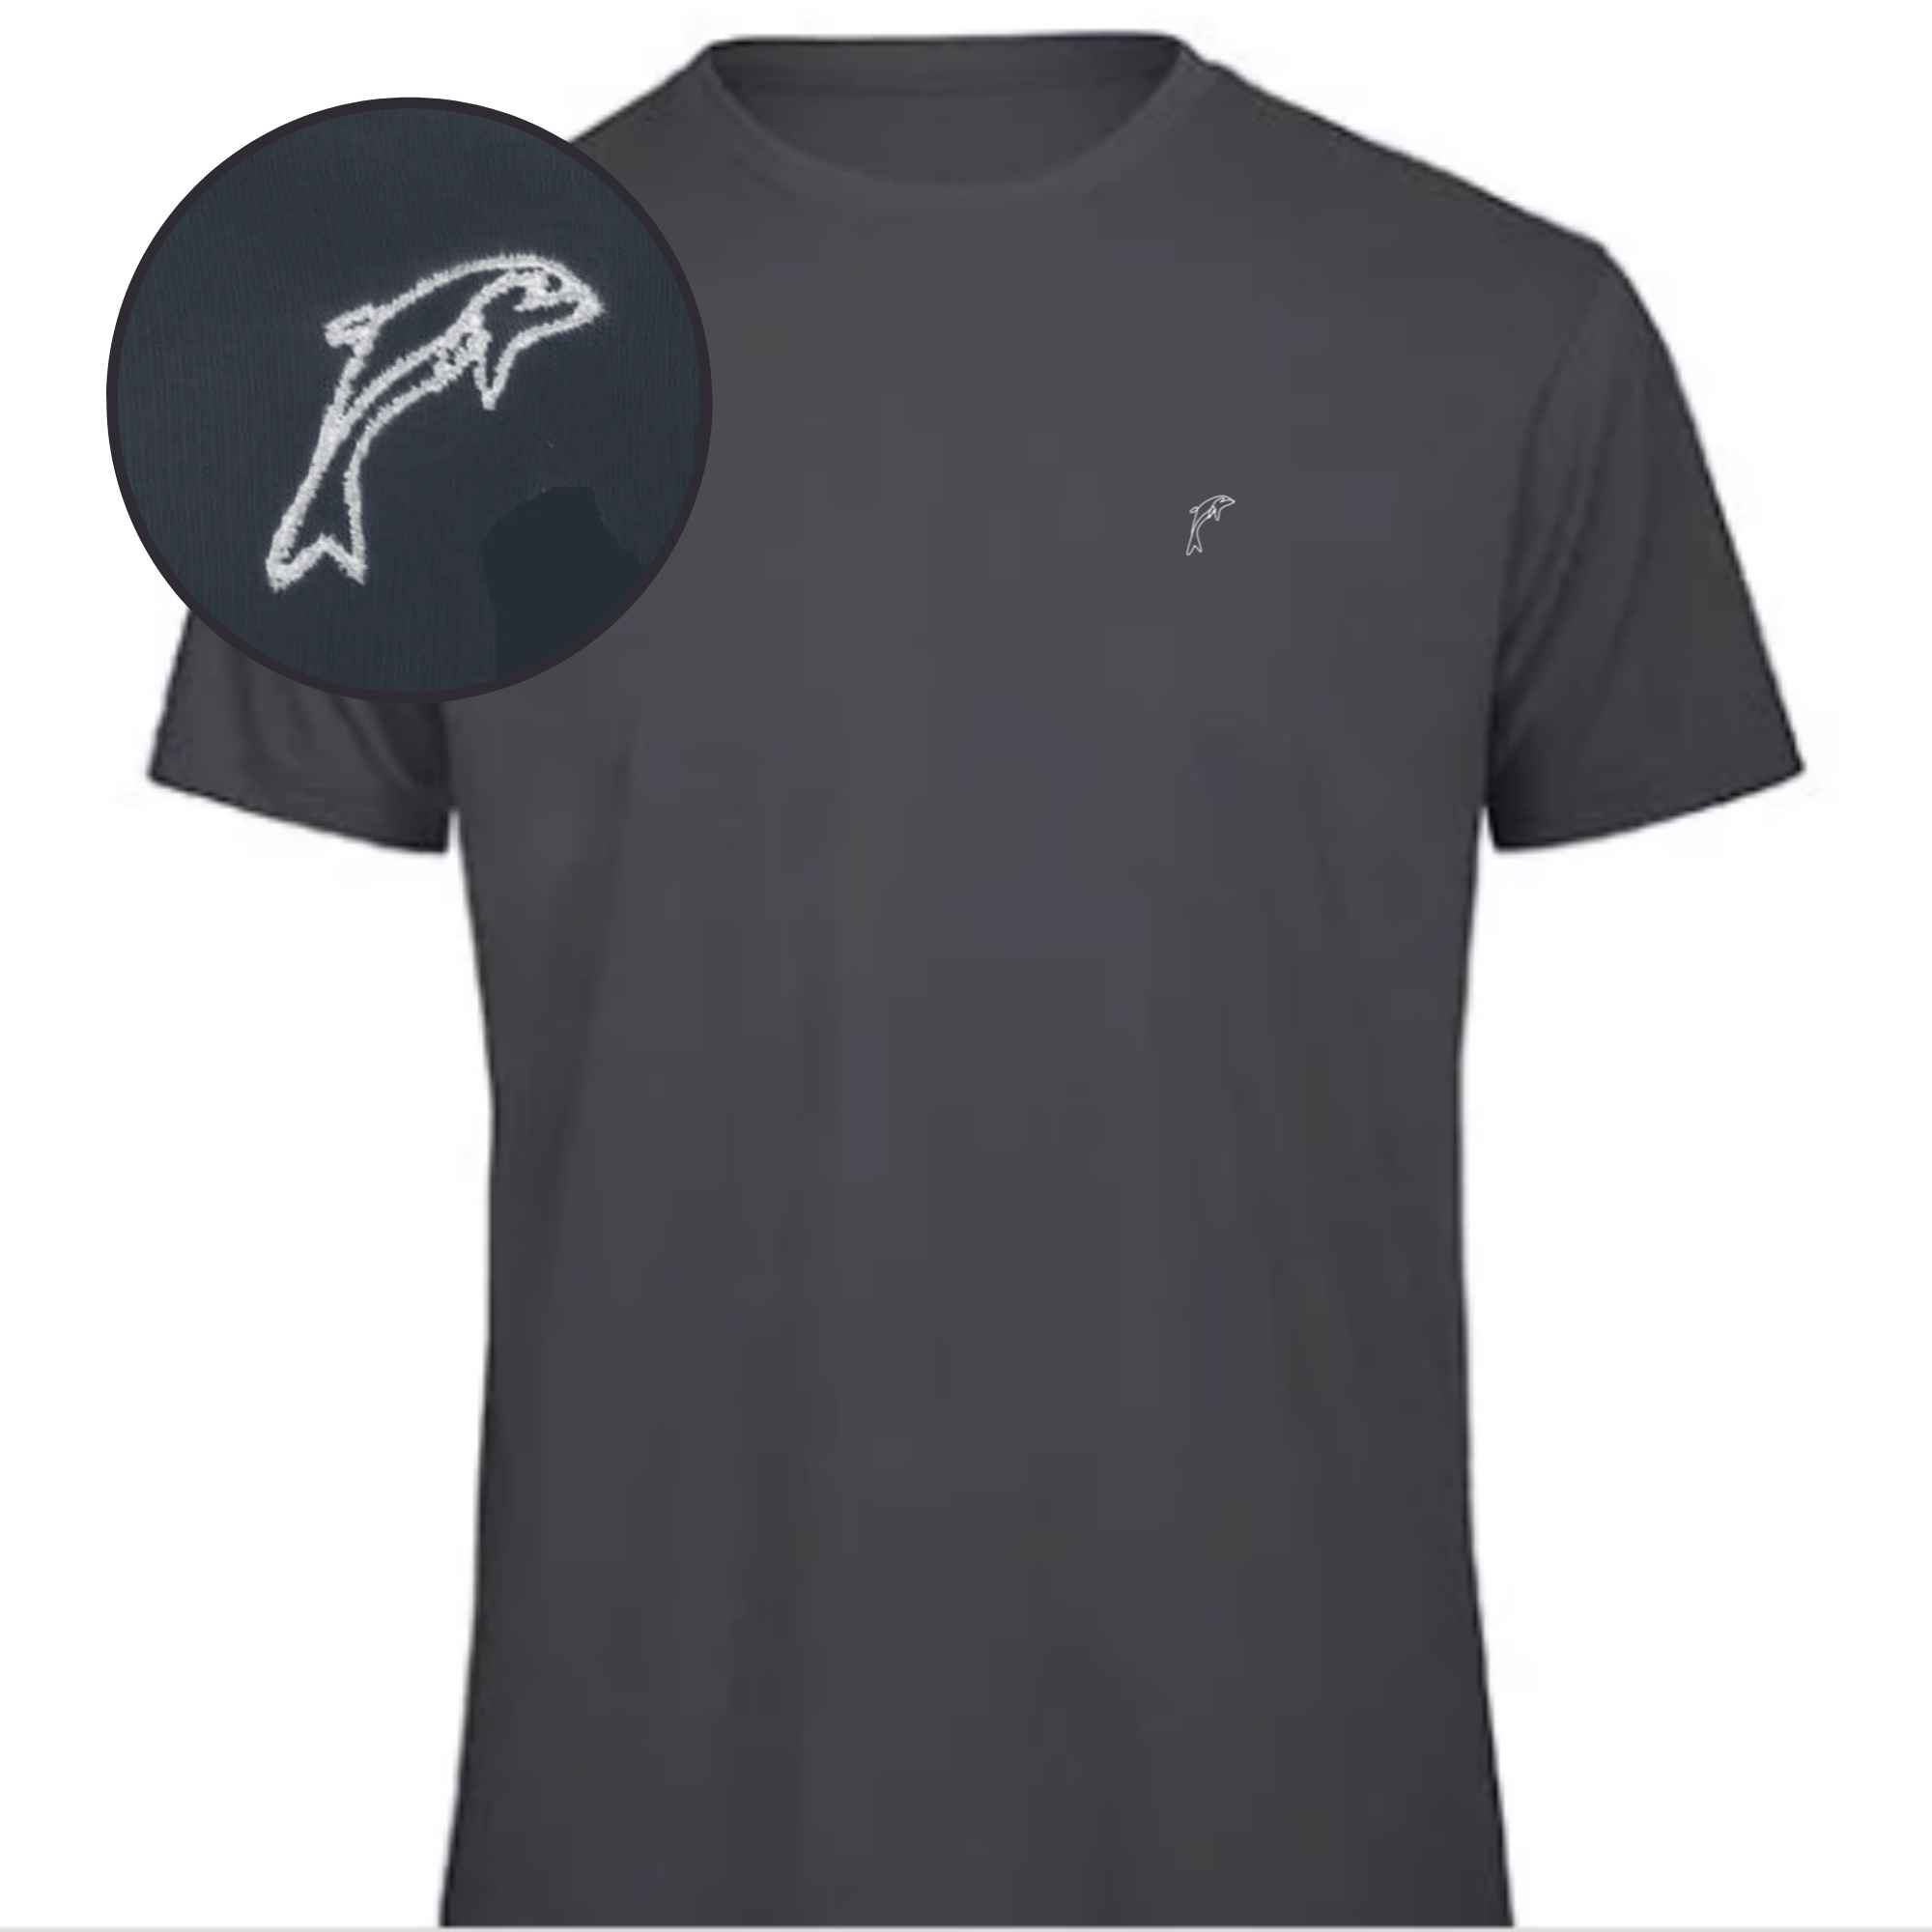 Dunkelblaues Shirt mit einem Delphin auf die linke Brust gestickt